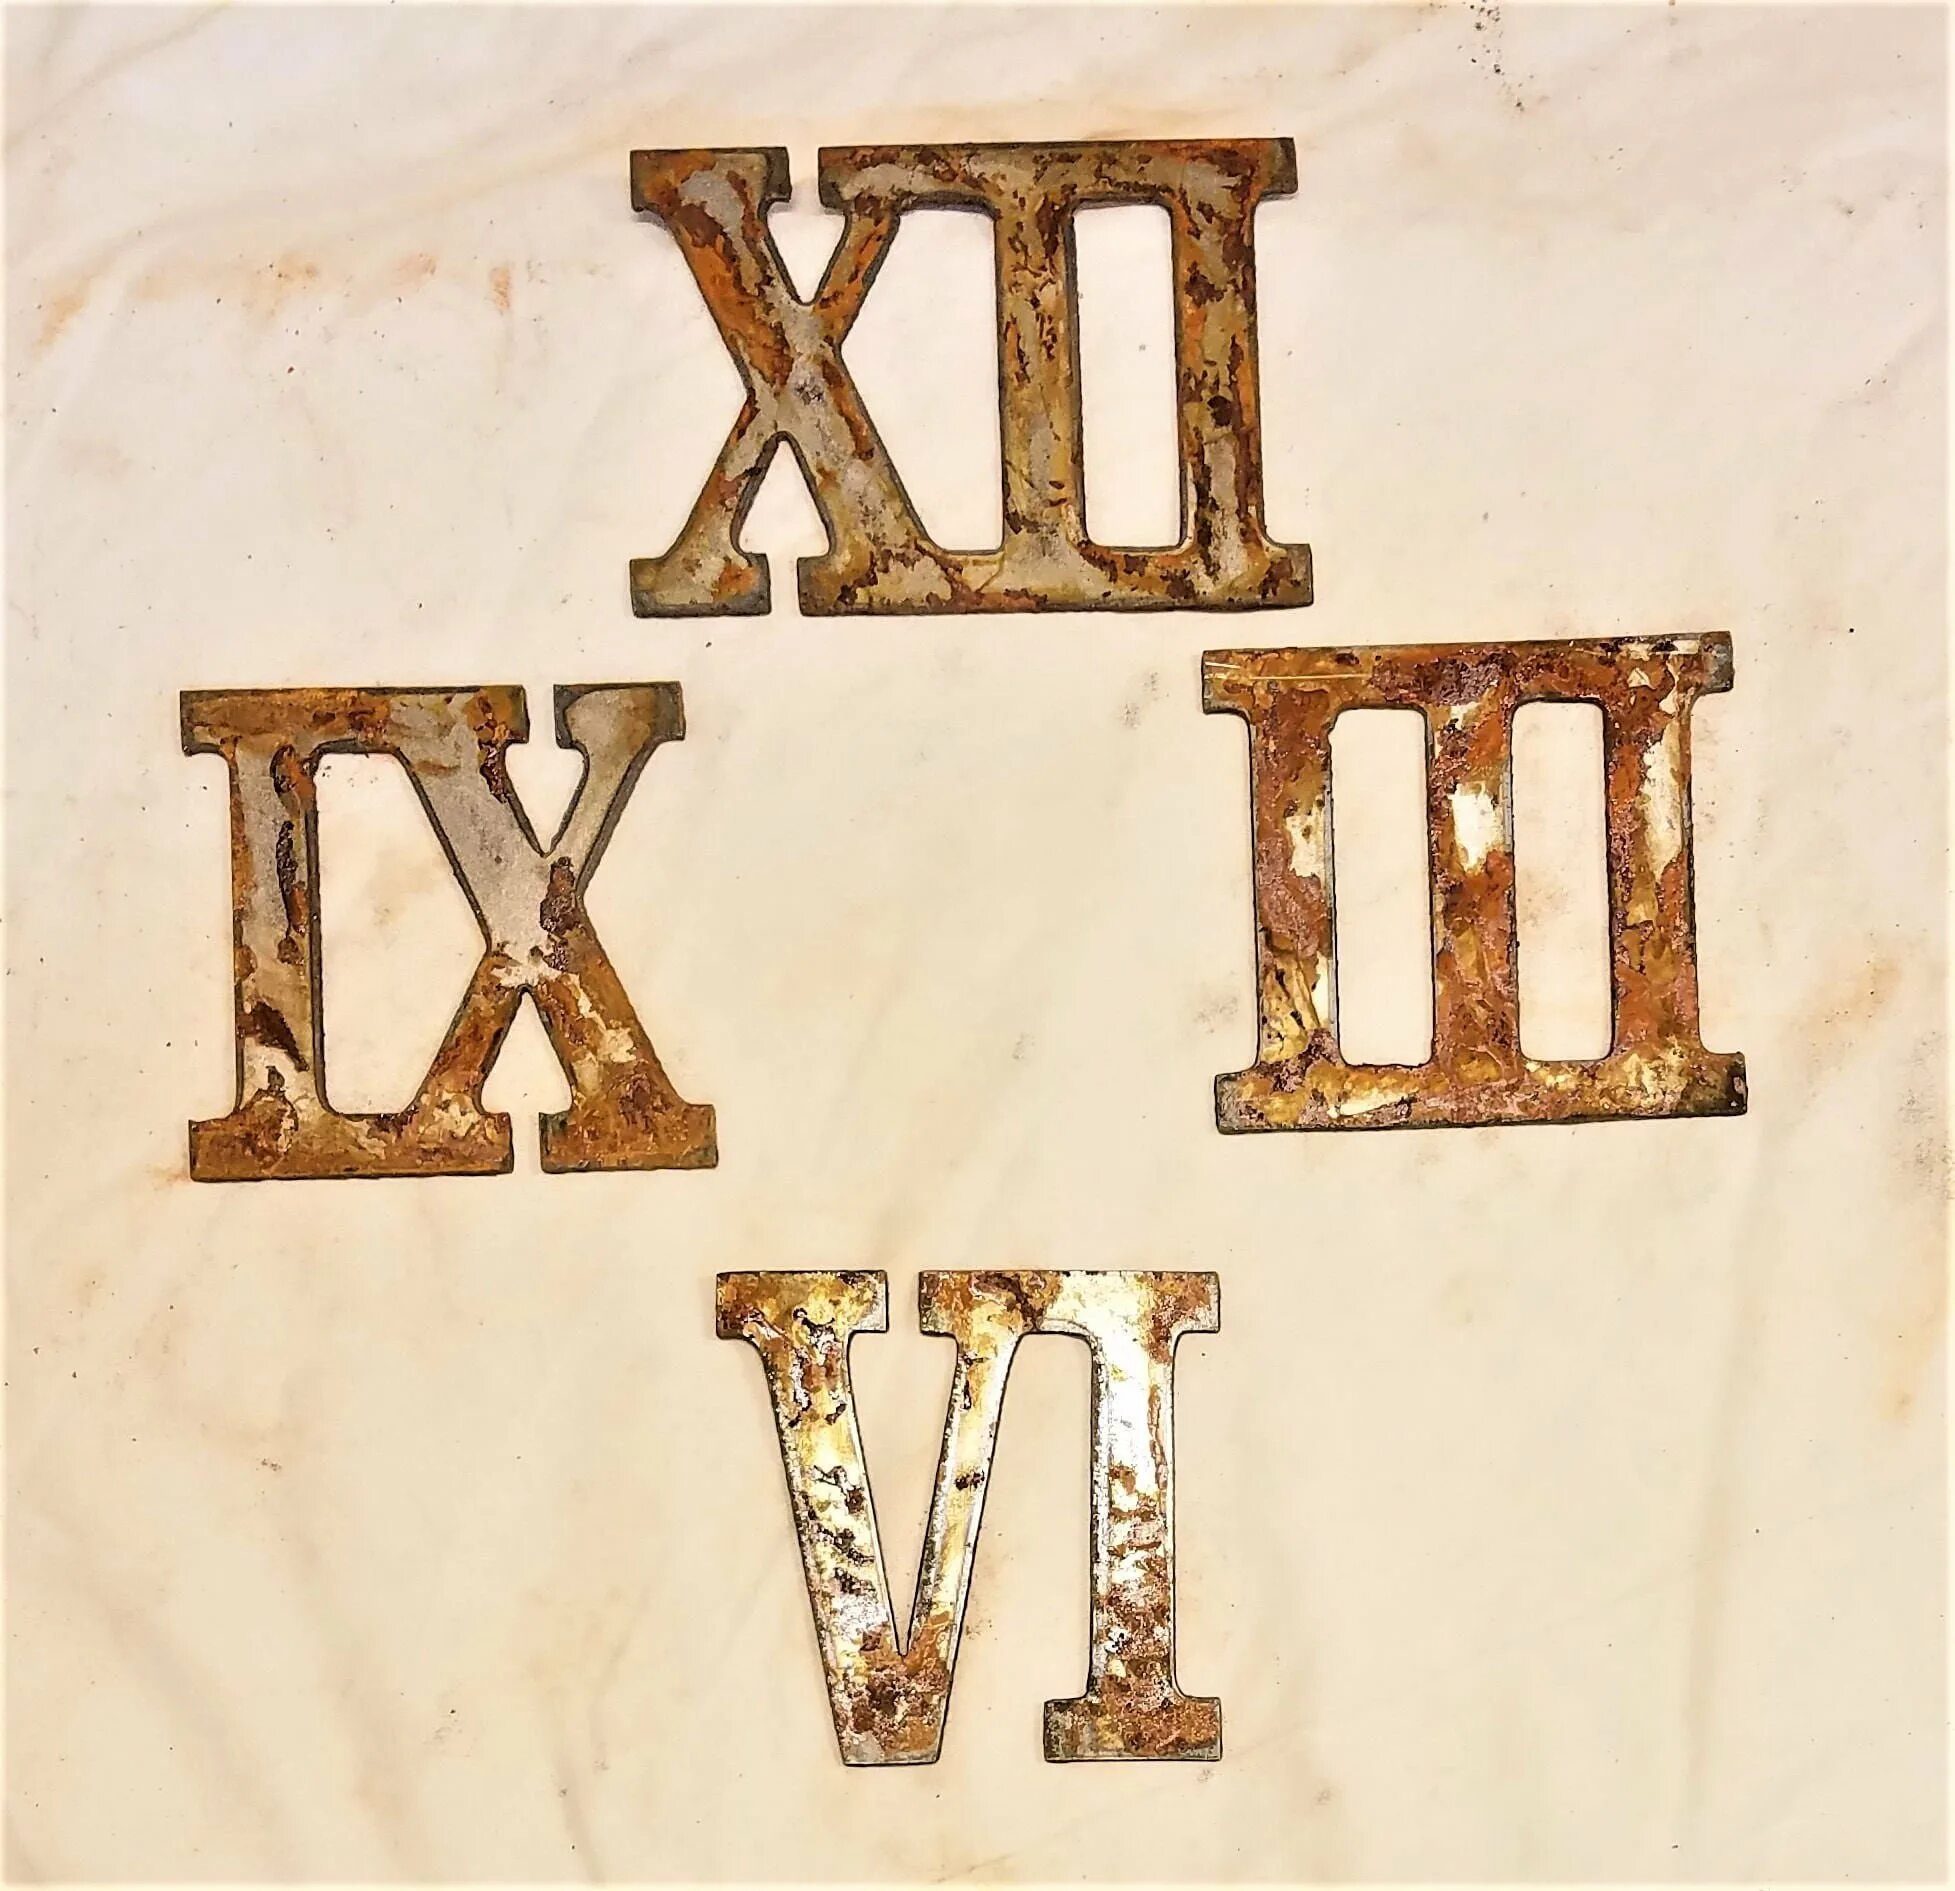 Римские цифры. Римские цифры XII. Римские цифры 1-12. Римские цифры для печати. Подпишите римскими цифрами